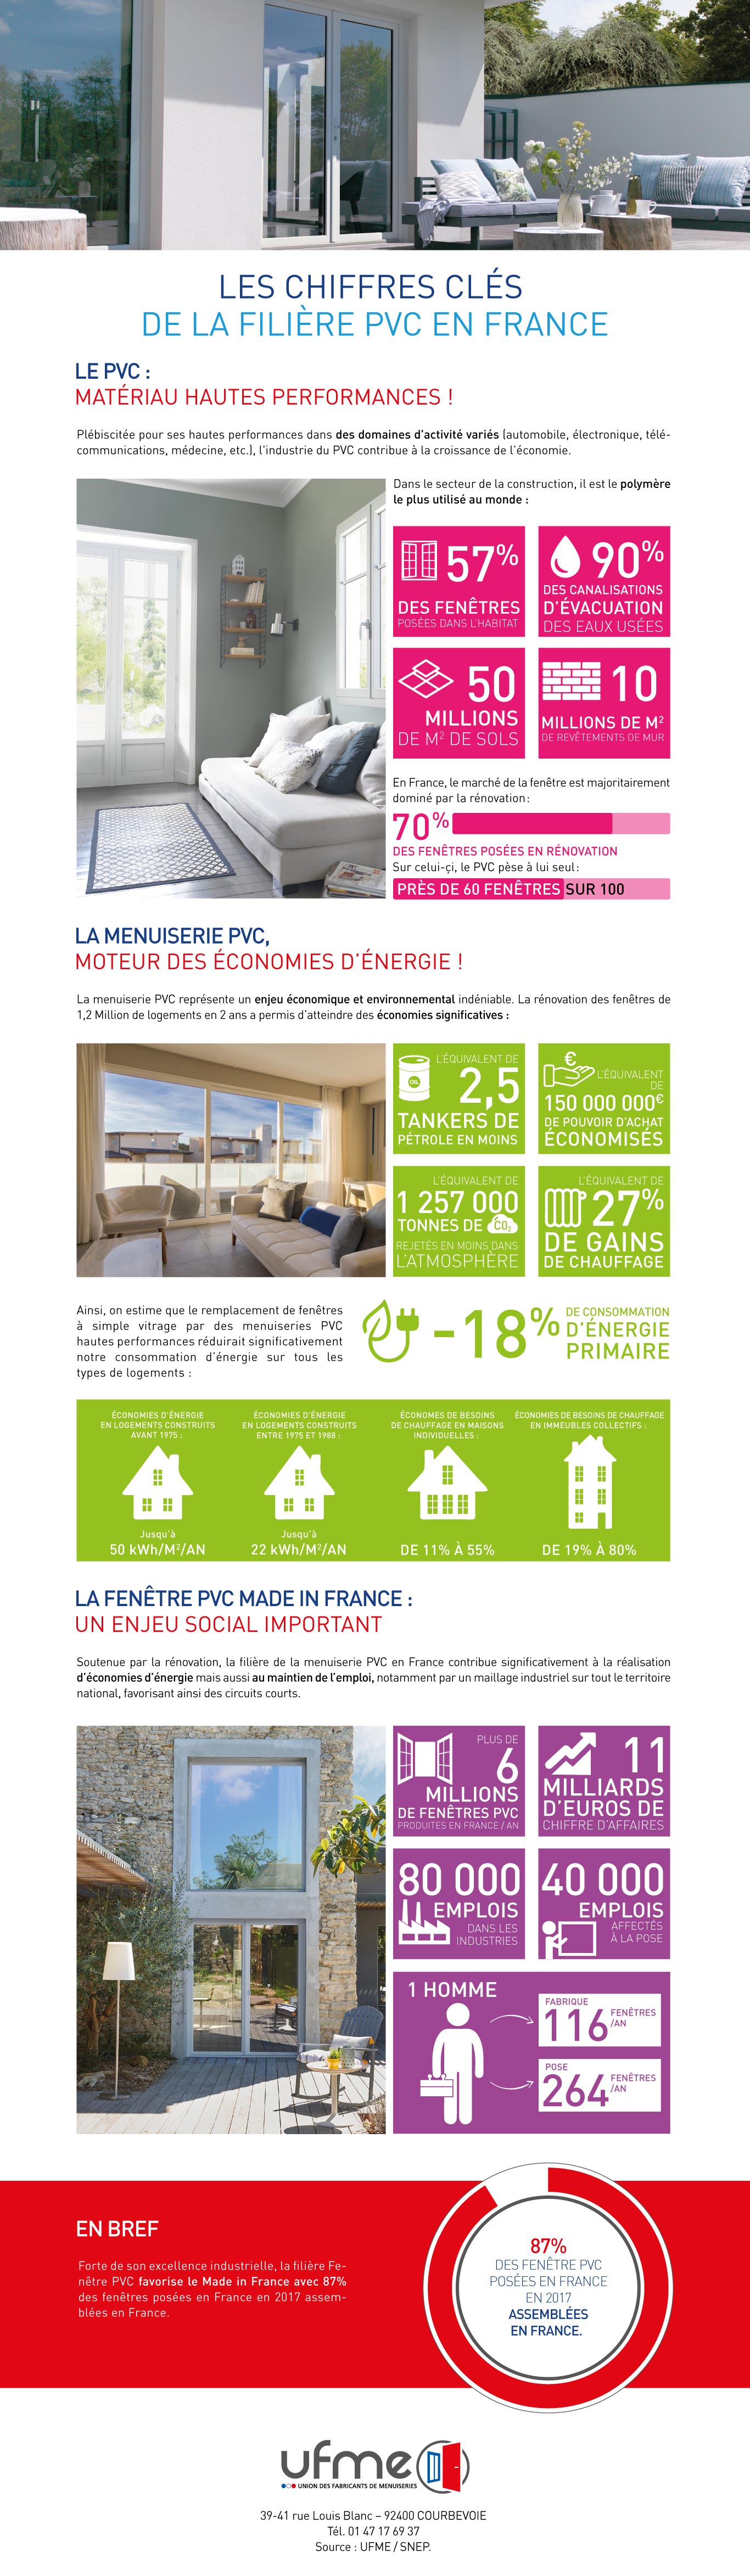 Infographie: les chiffres clés de la filière PVC en France